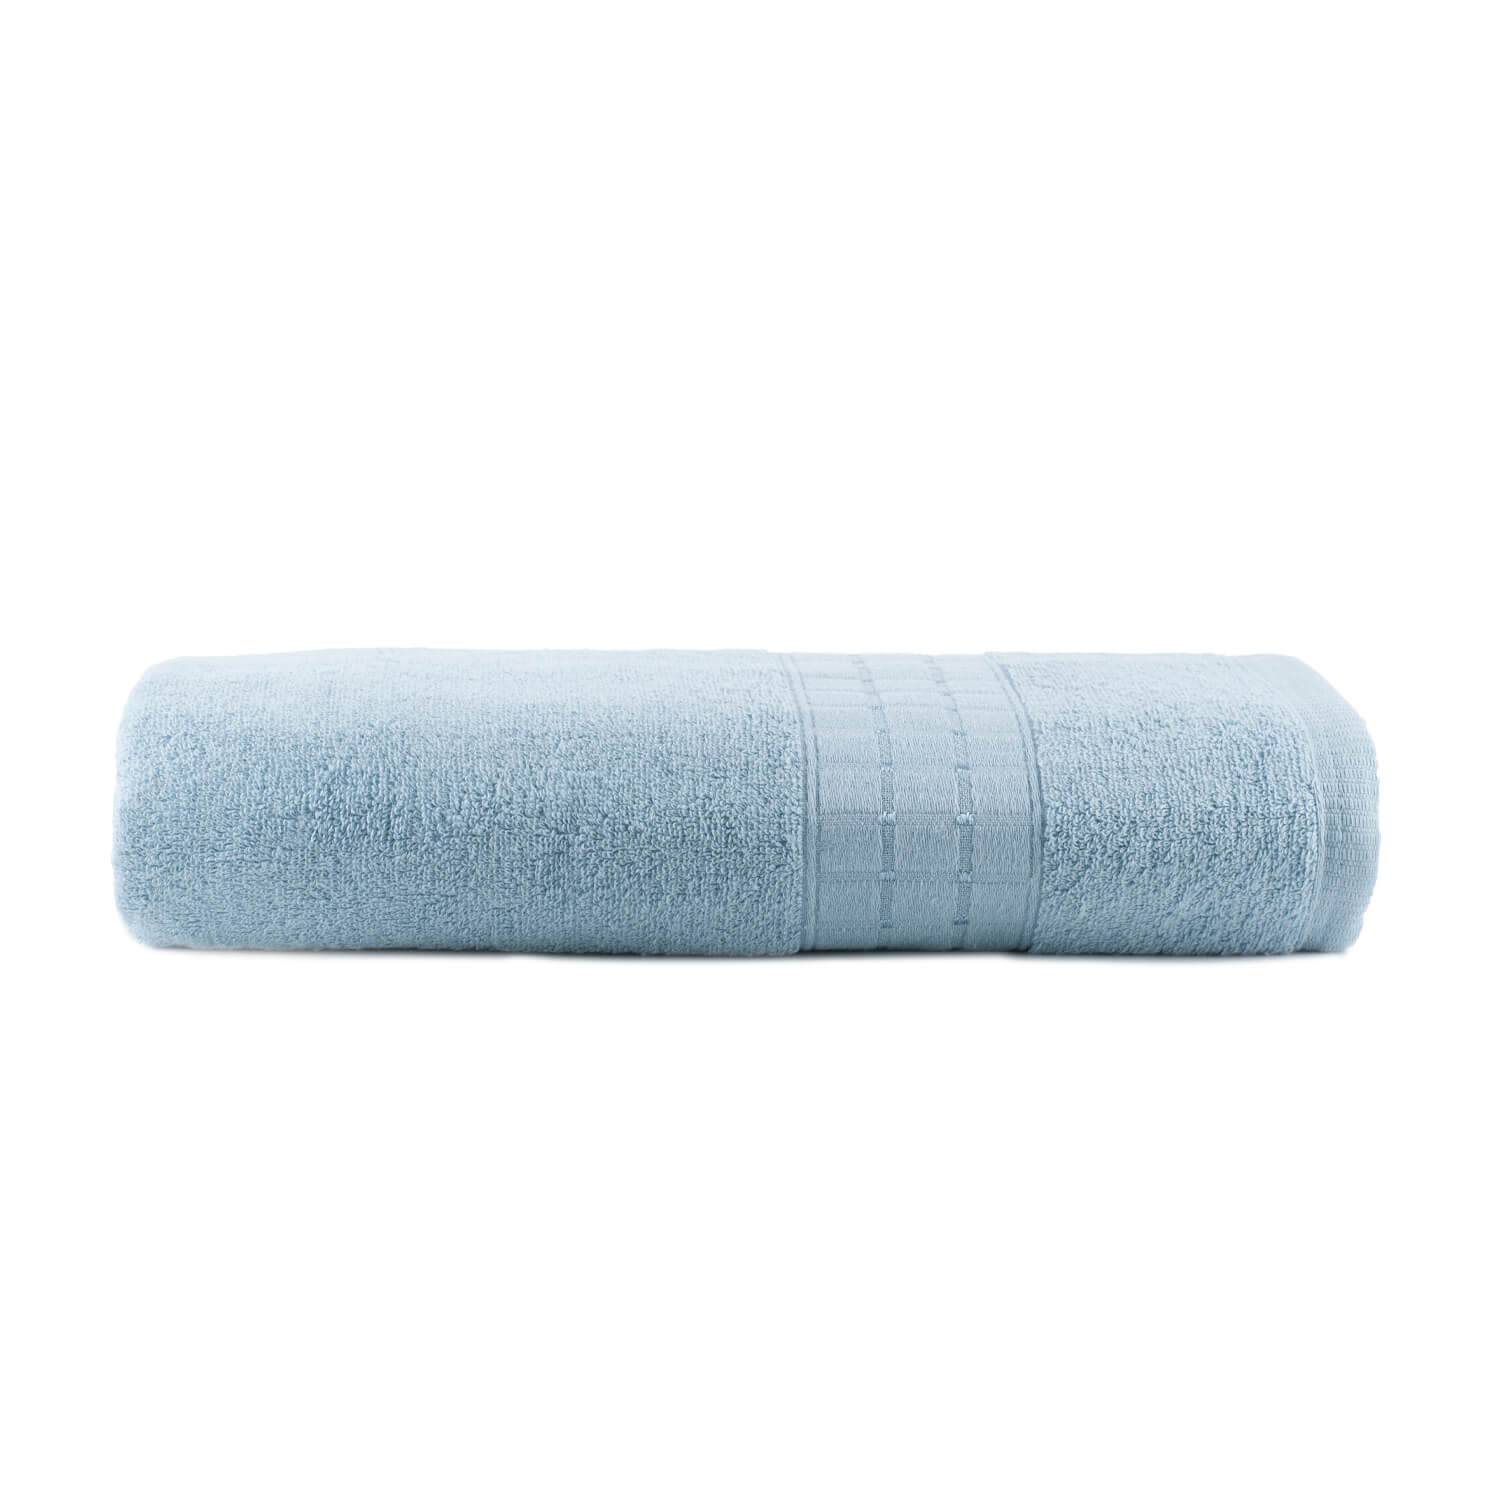 Toalha de Banho Class Azul - Dianneli